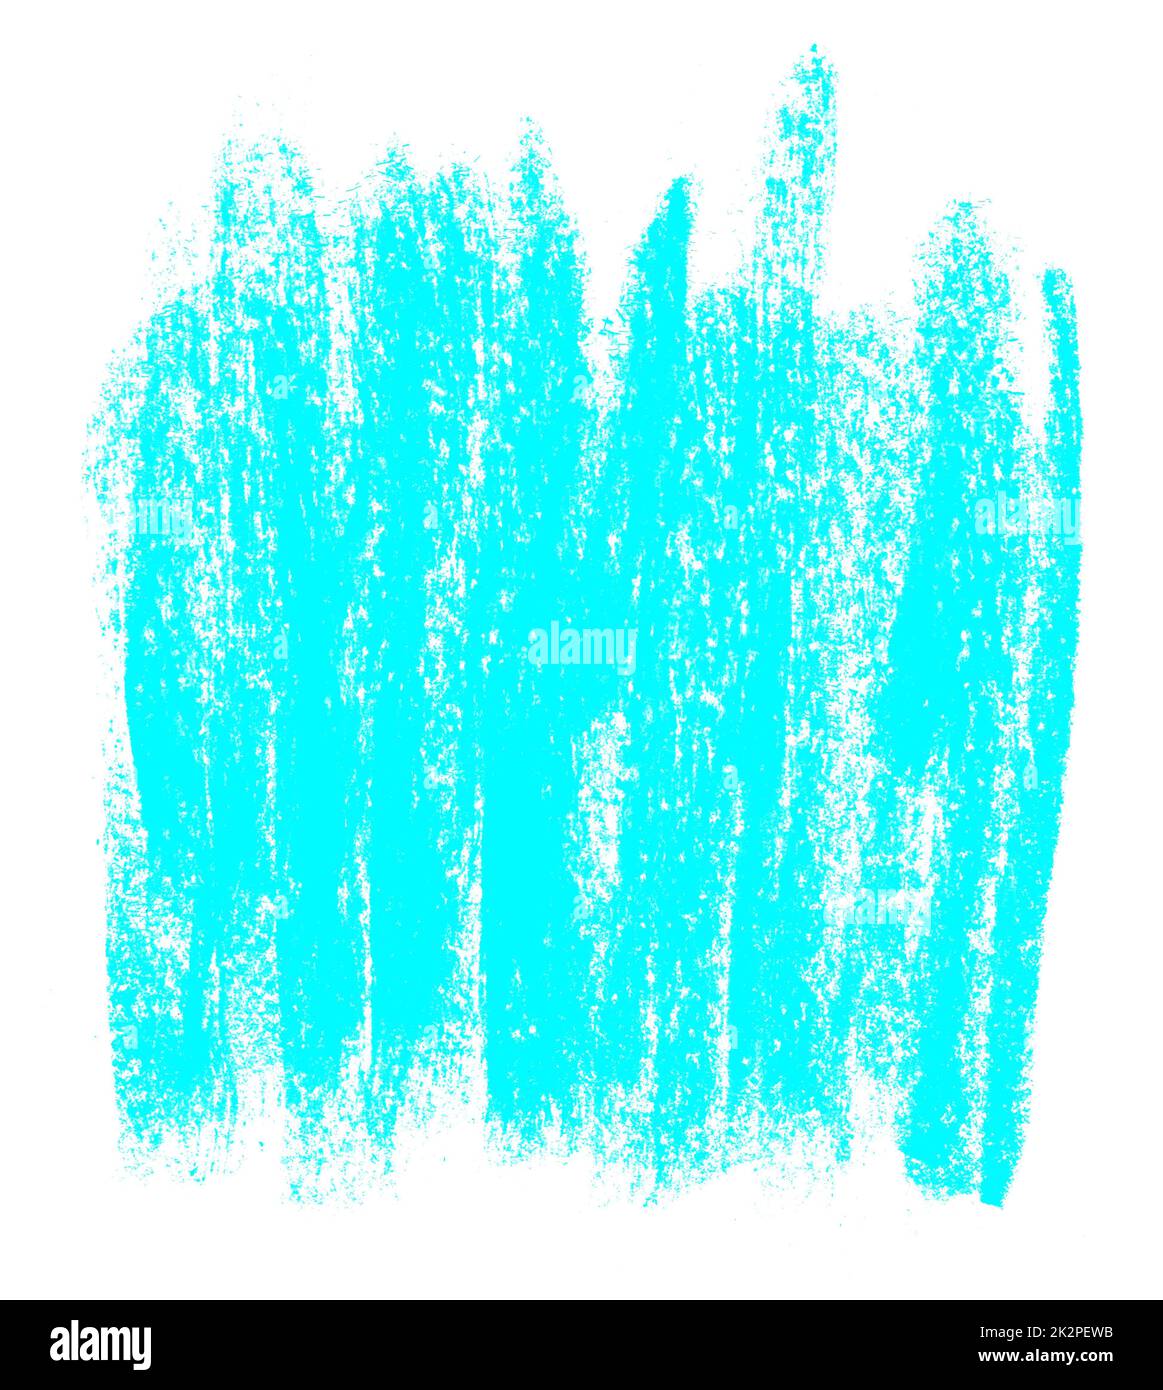 Craie peinte à la main ou rayures crayons de couleur bleue Banque D'Images